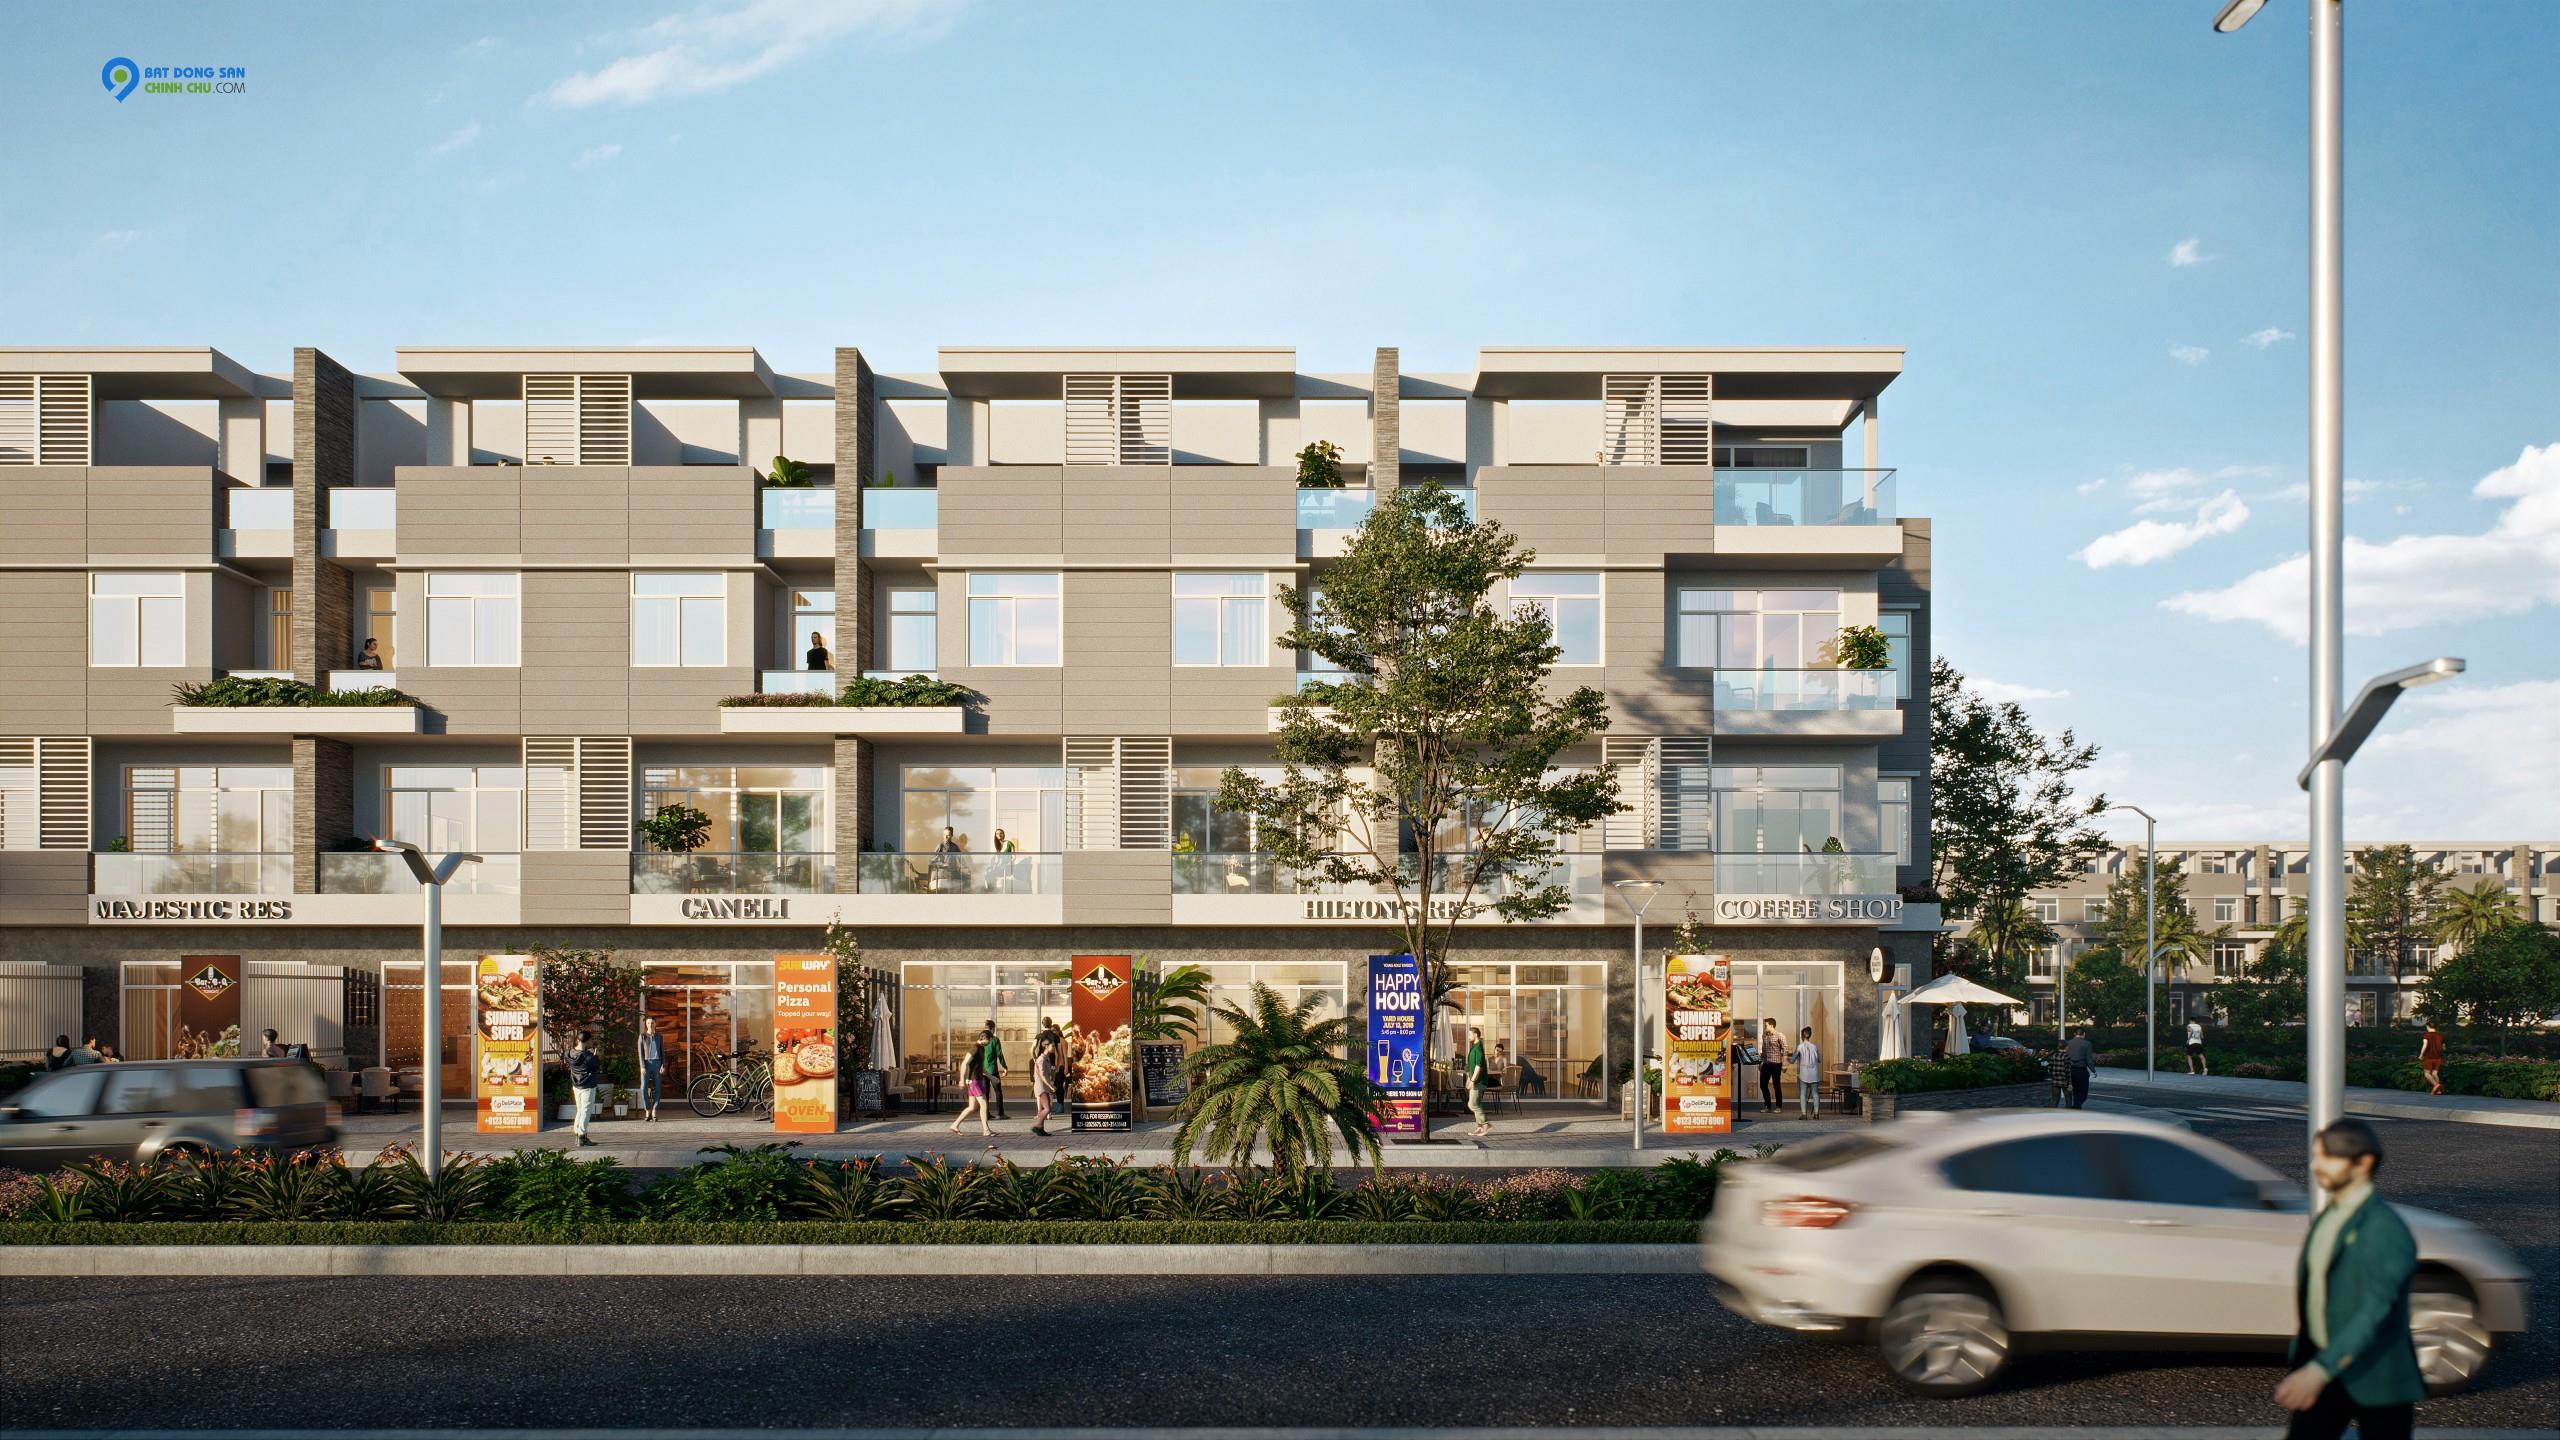 Chuyên bán đất nền nhà phố, biệt thự dự án King Bay - Fenice Nhơn Trạch